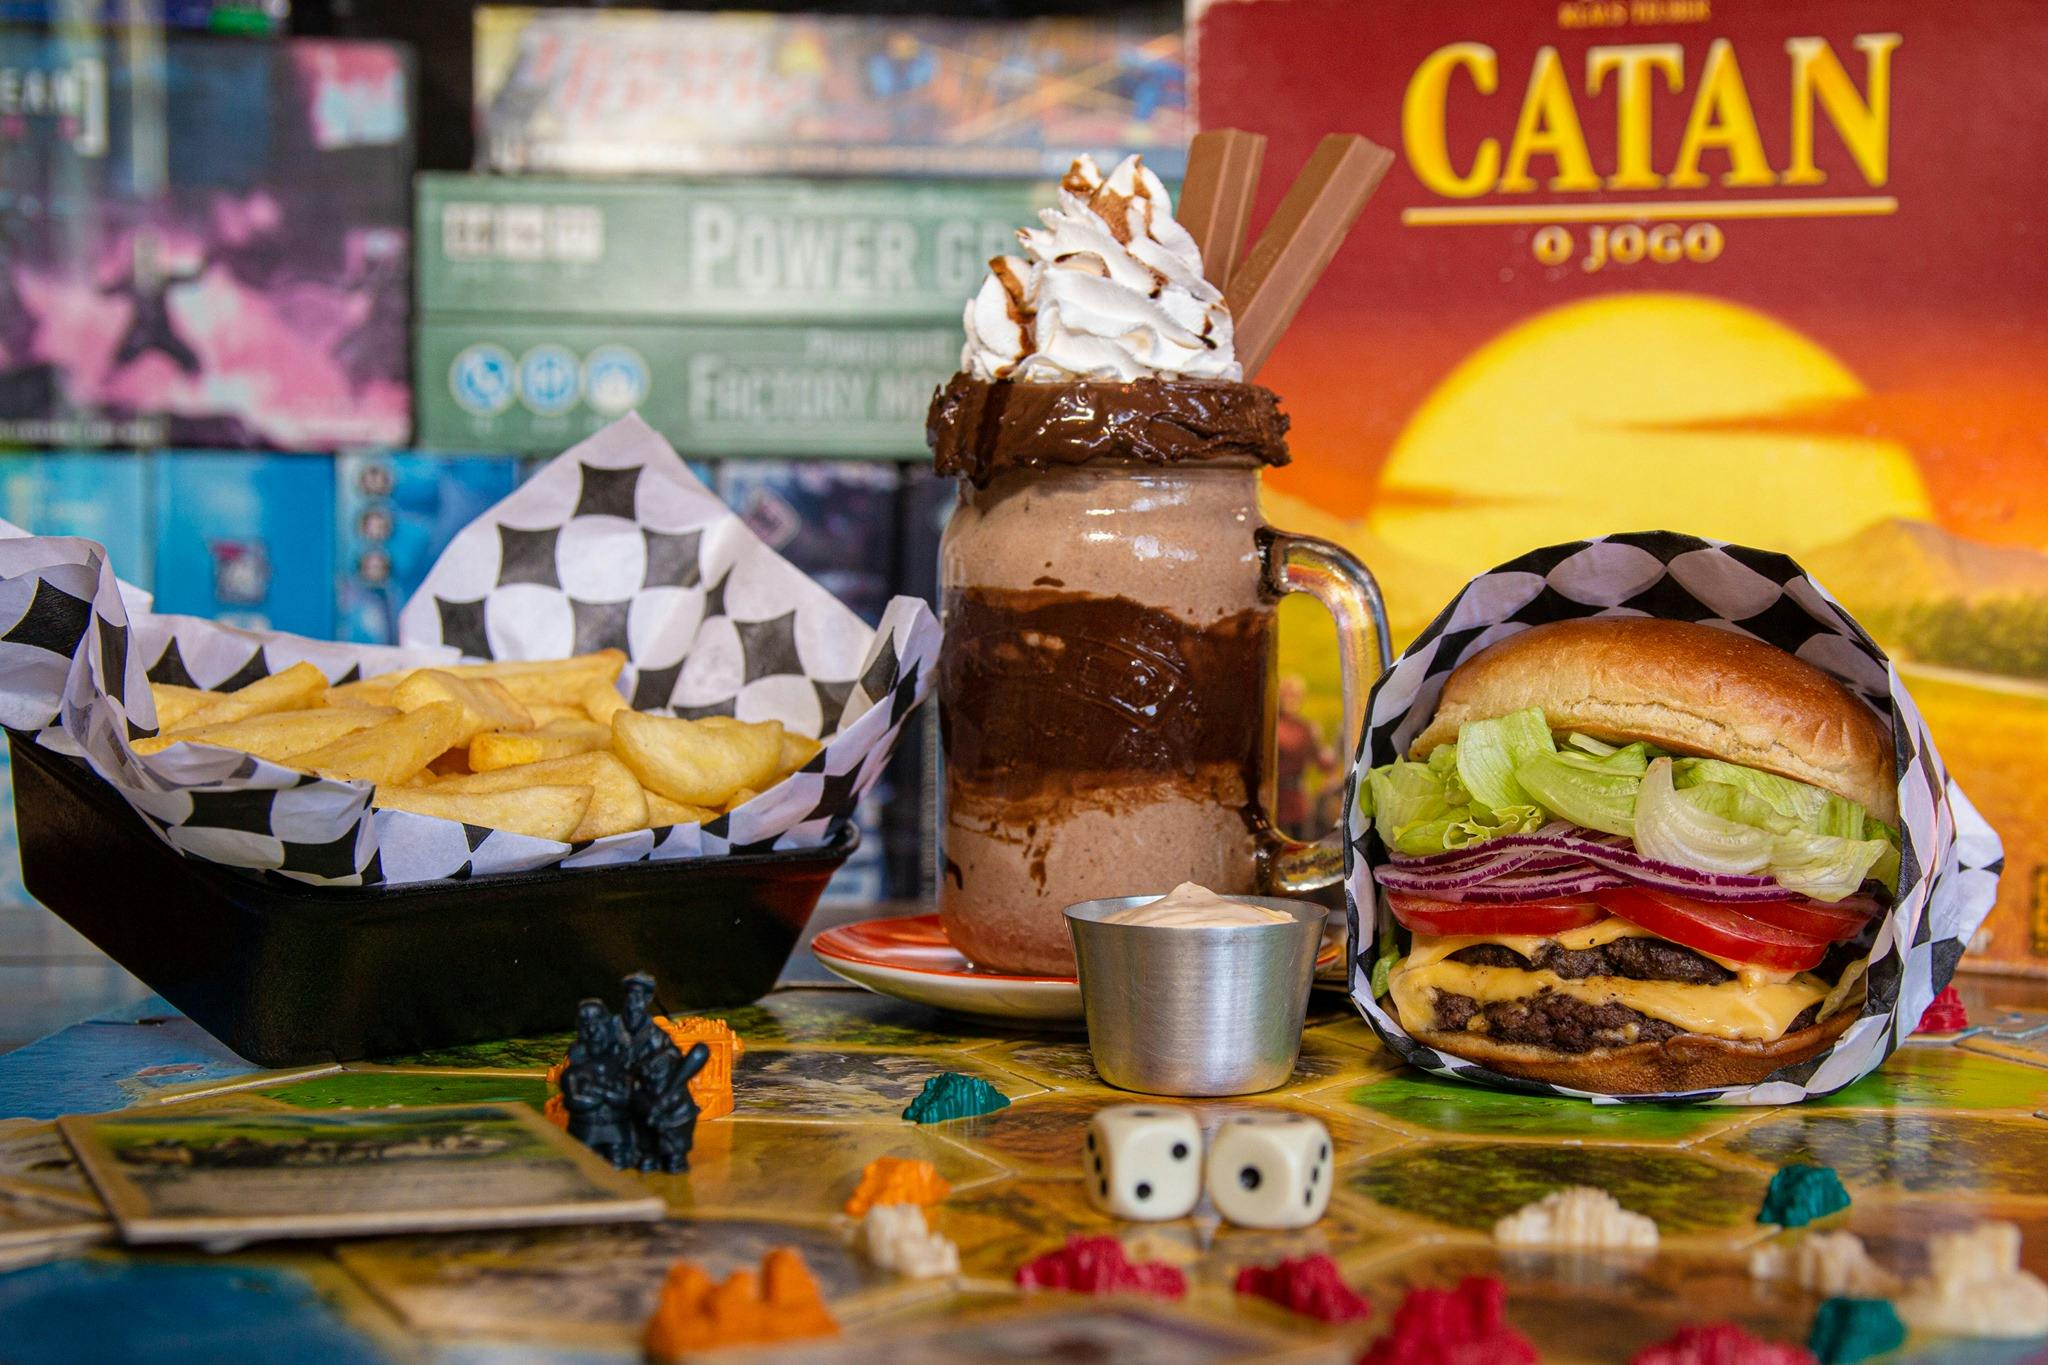 Seu refúgio geek em CG-MS! Burgers premium, drinks, porções, sobremesas e 900 jogos de tabuleiro. #JogaJunto
www.jogaburger.com.br